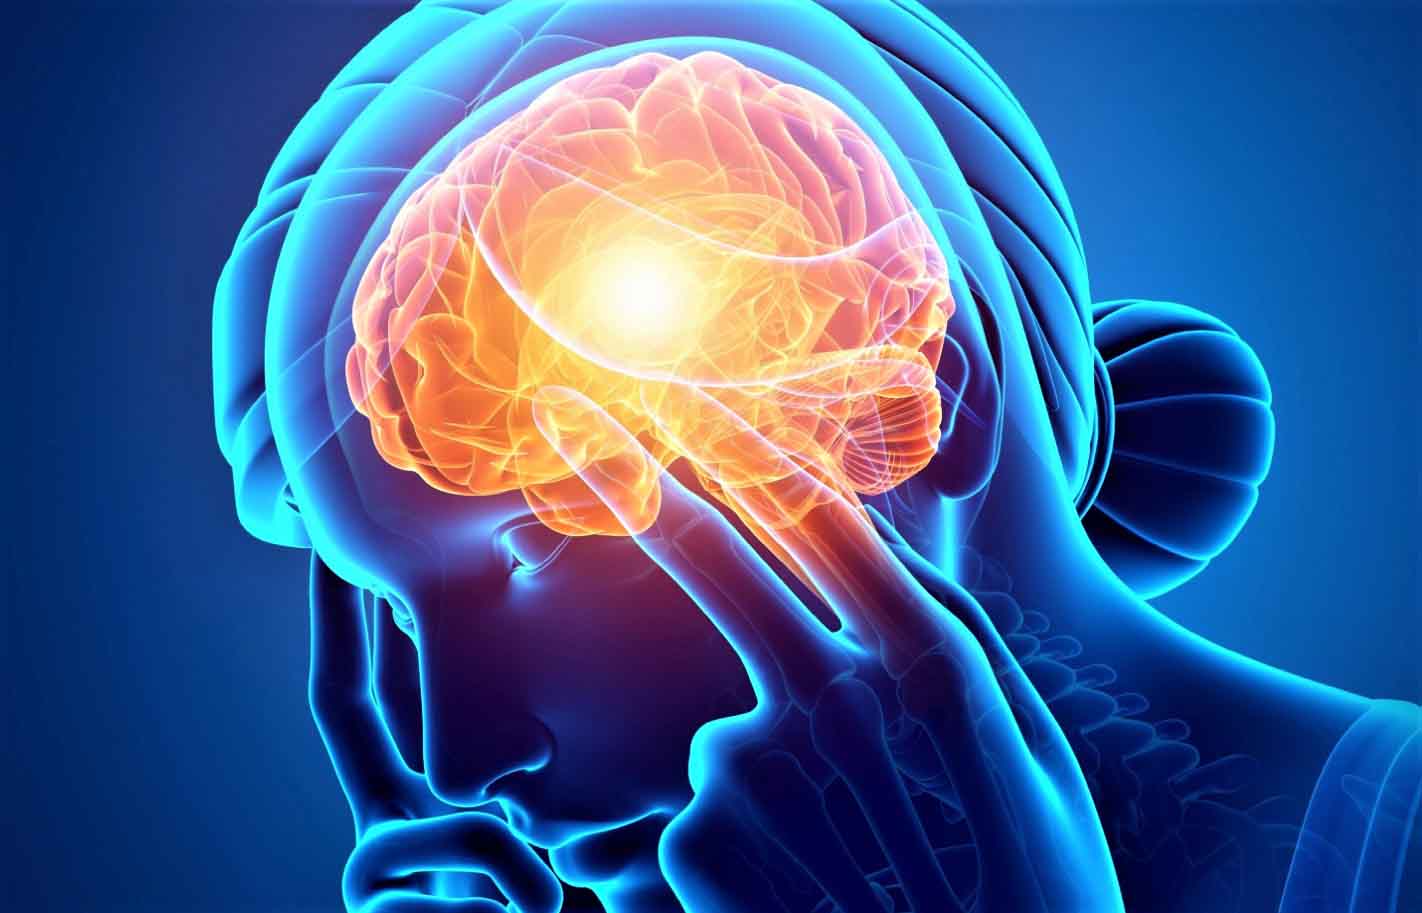 Ответы к тестам НМО: "Эпизодические синдромы, которые могут ассоциироваться с мигренью"